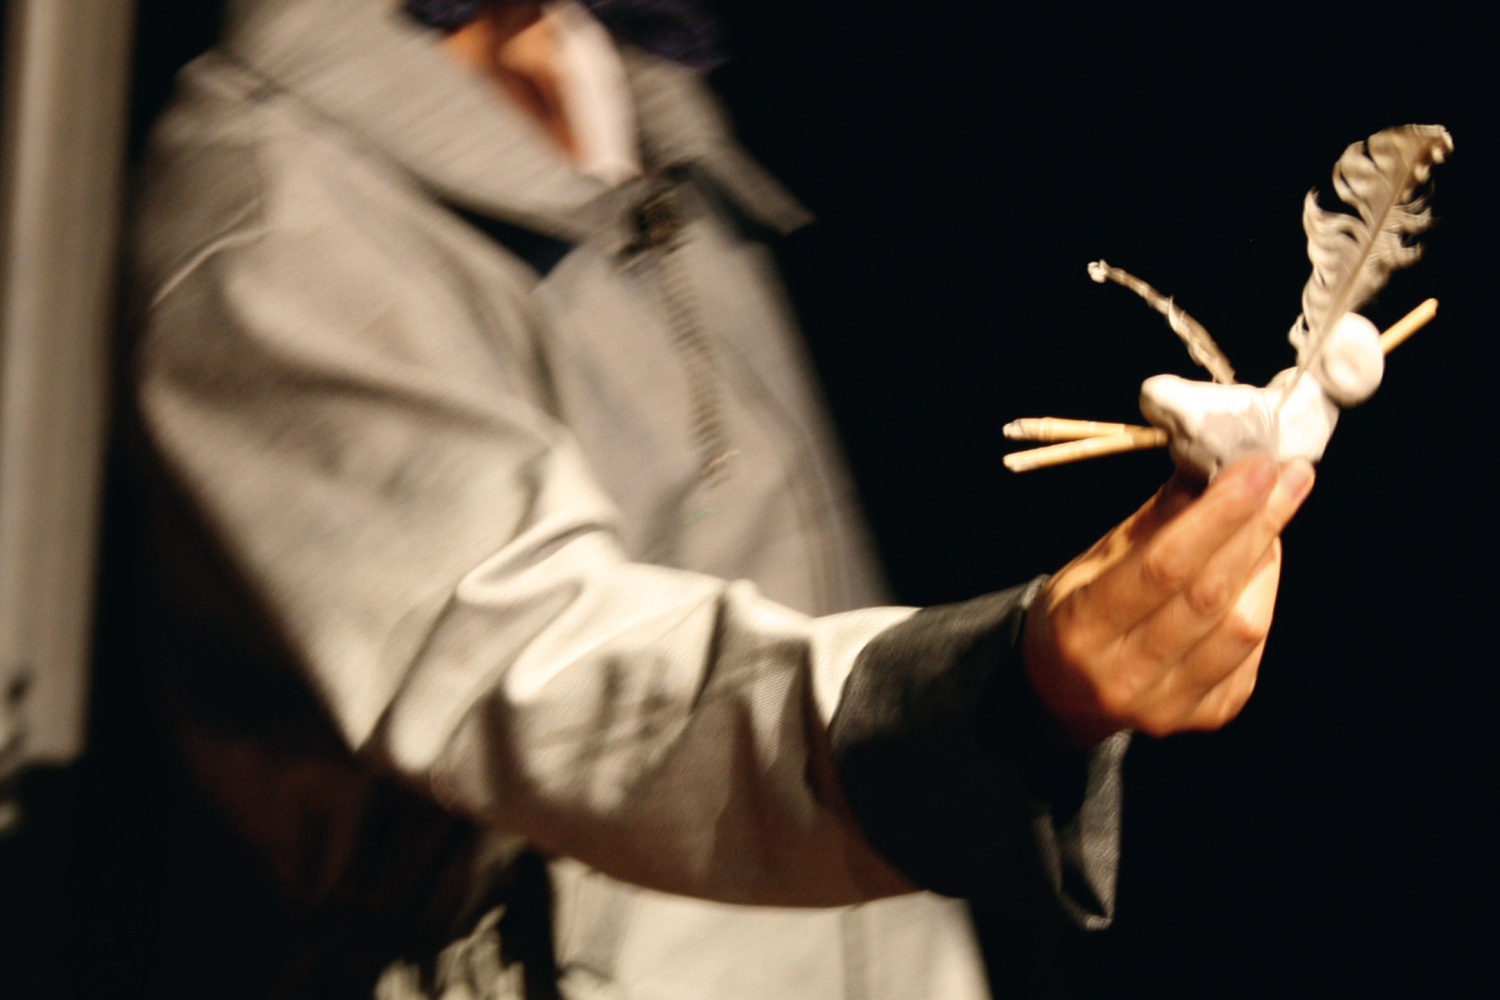 In Nahaufnahme ist schemenhaft der Oberkörper und Arm einer Person auf dem Bühnenraum zu sehen. In der Hand hält sie eine kleine Figur aus weißer Knete mit Stöckchen als Armen und einer Feder.